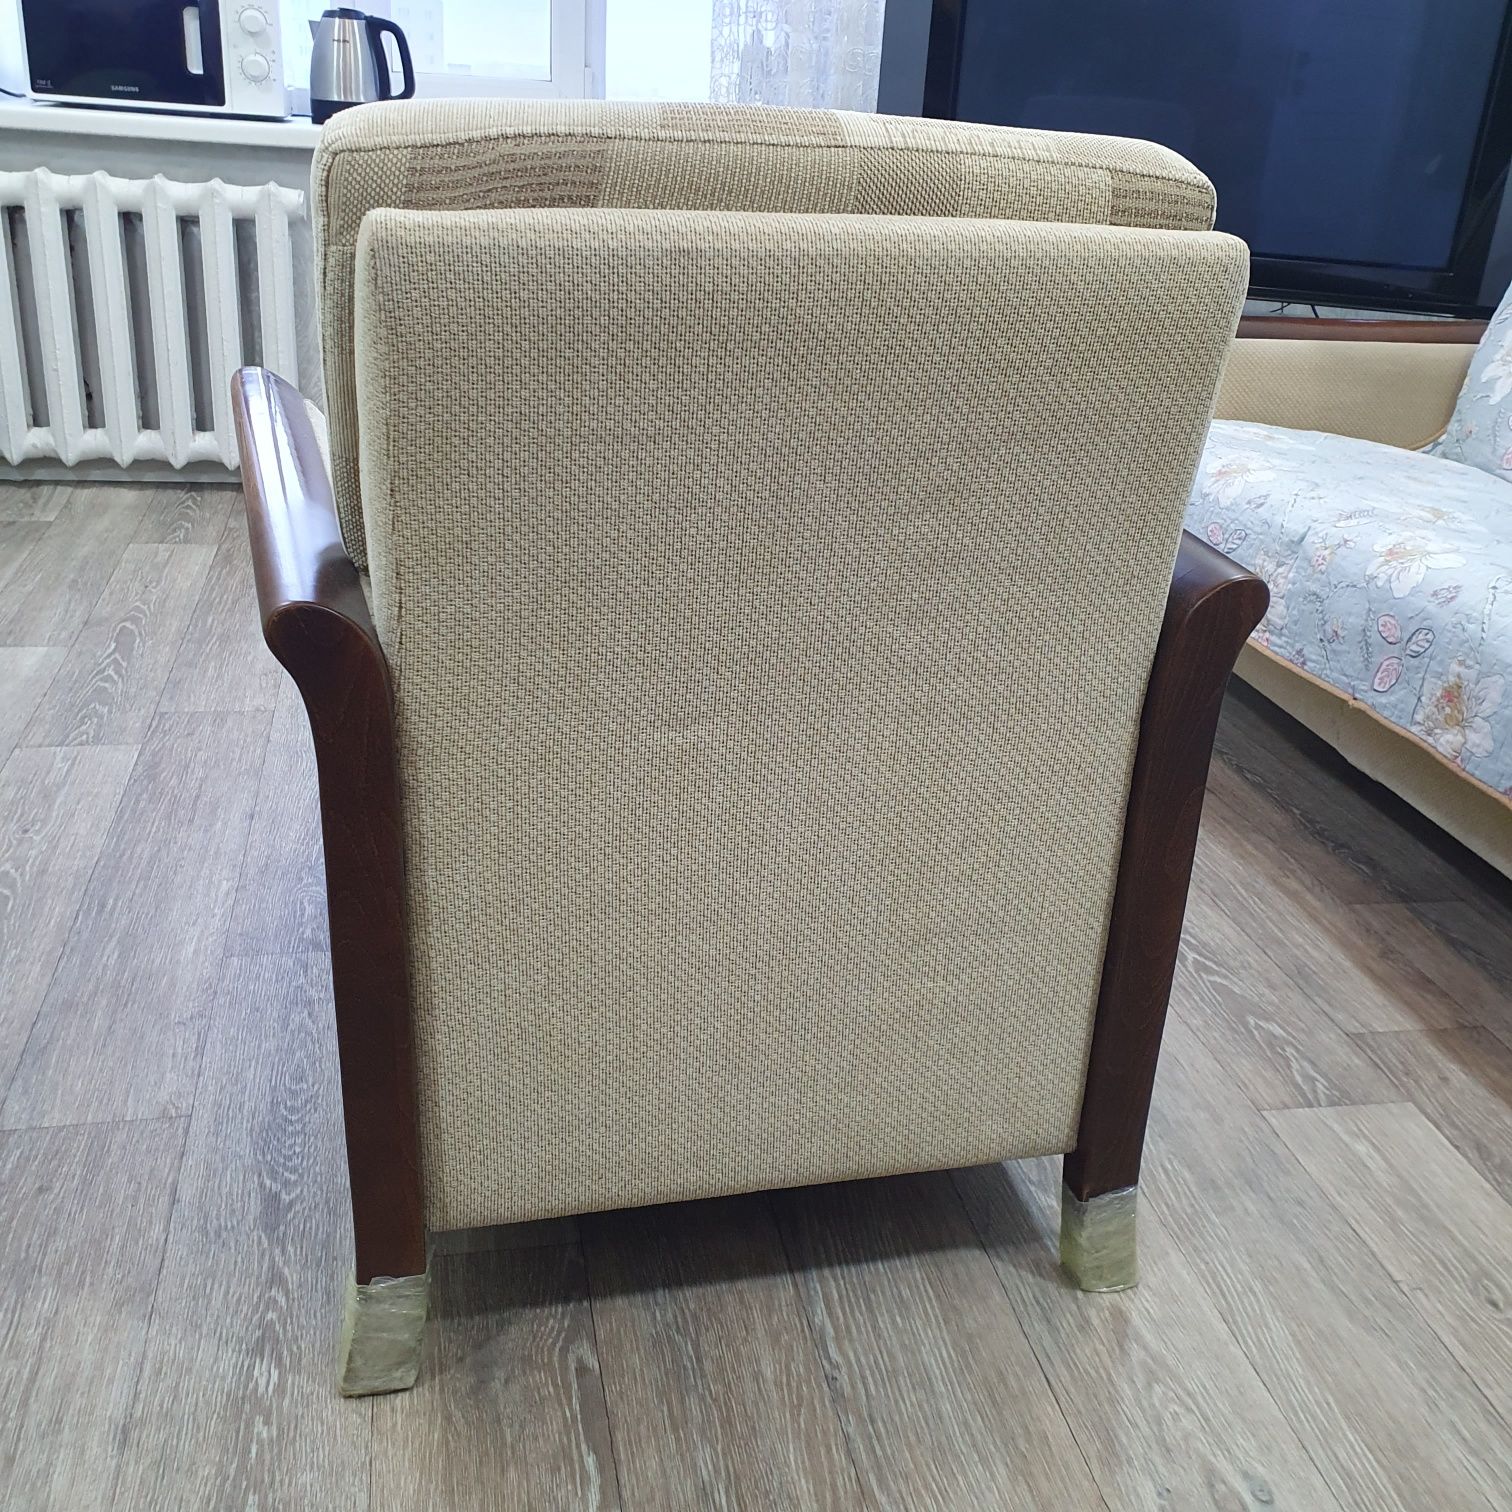 Продам кресла 2 шт от Белорусского комплекта